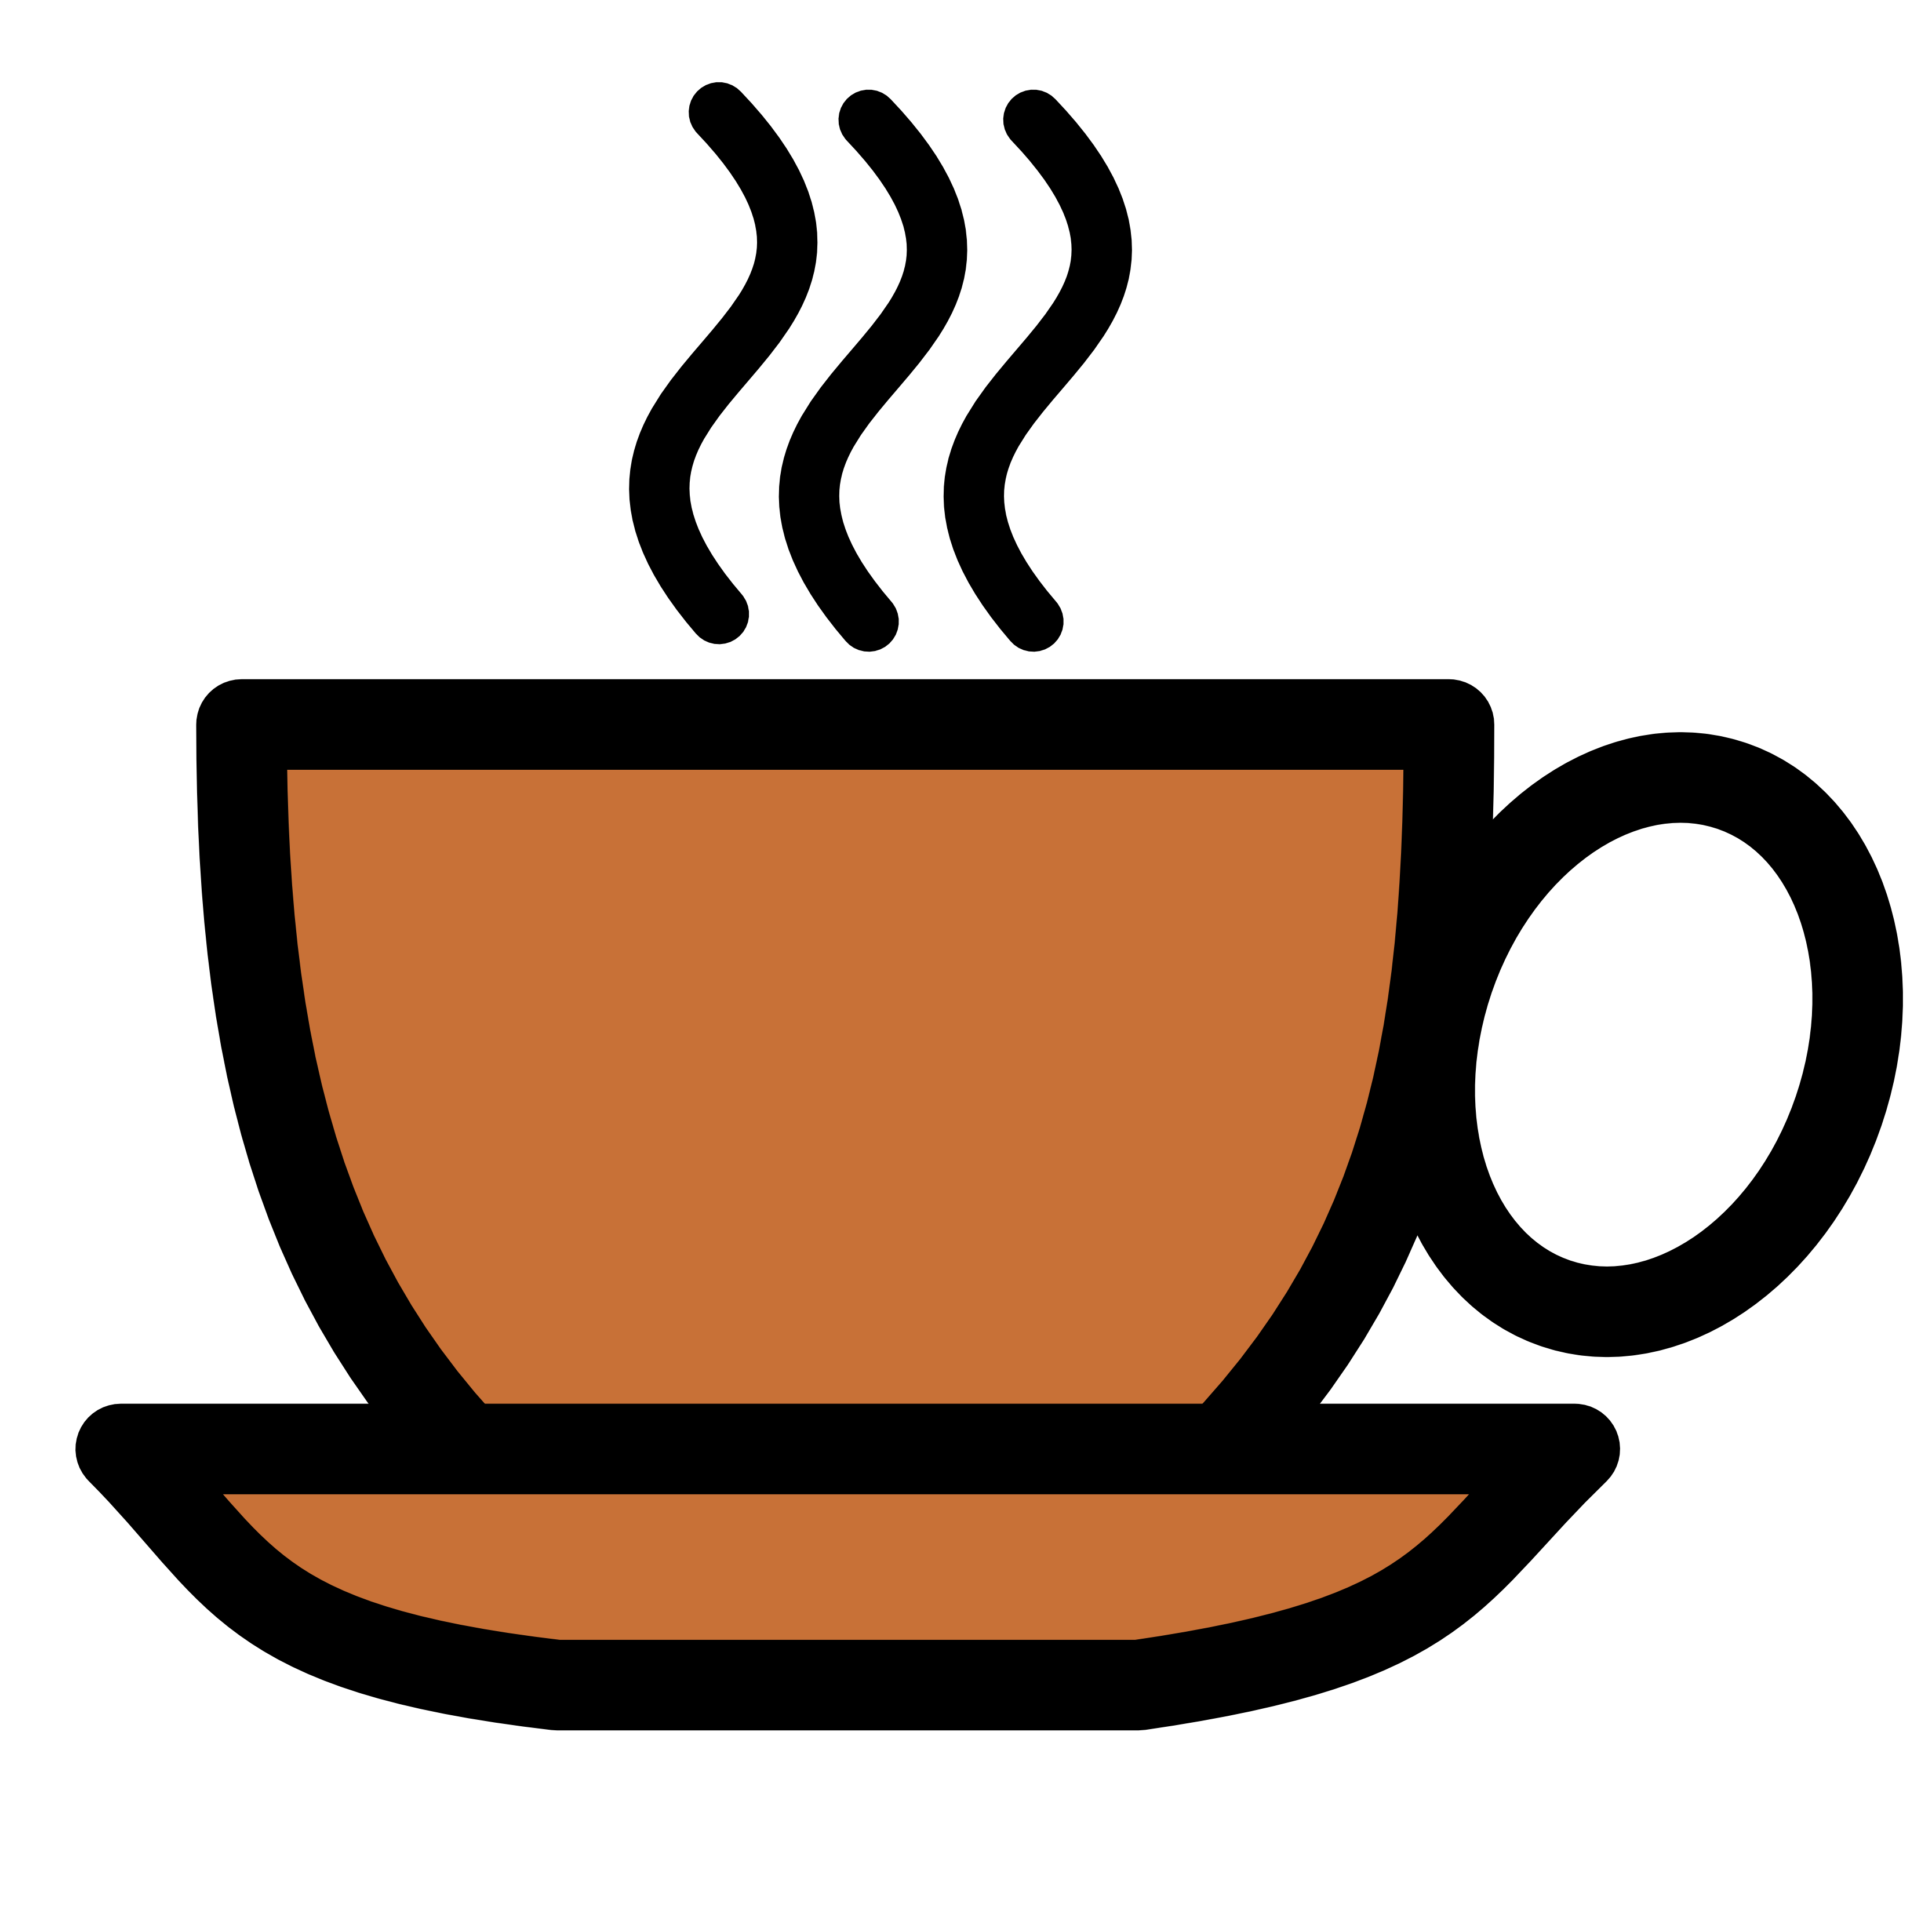 Coffe tips on coffee coffee b